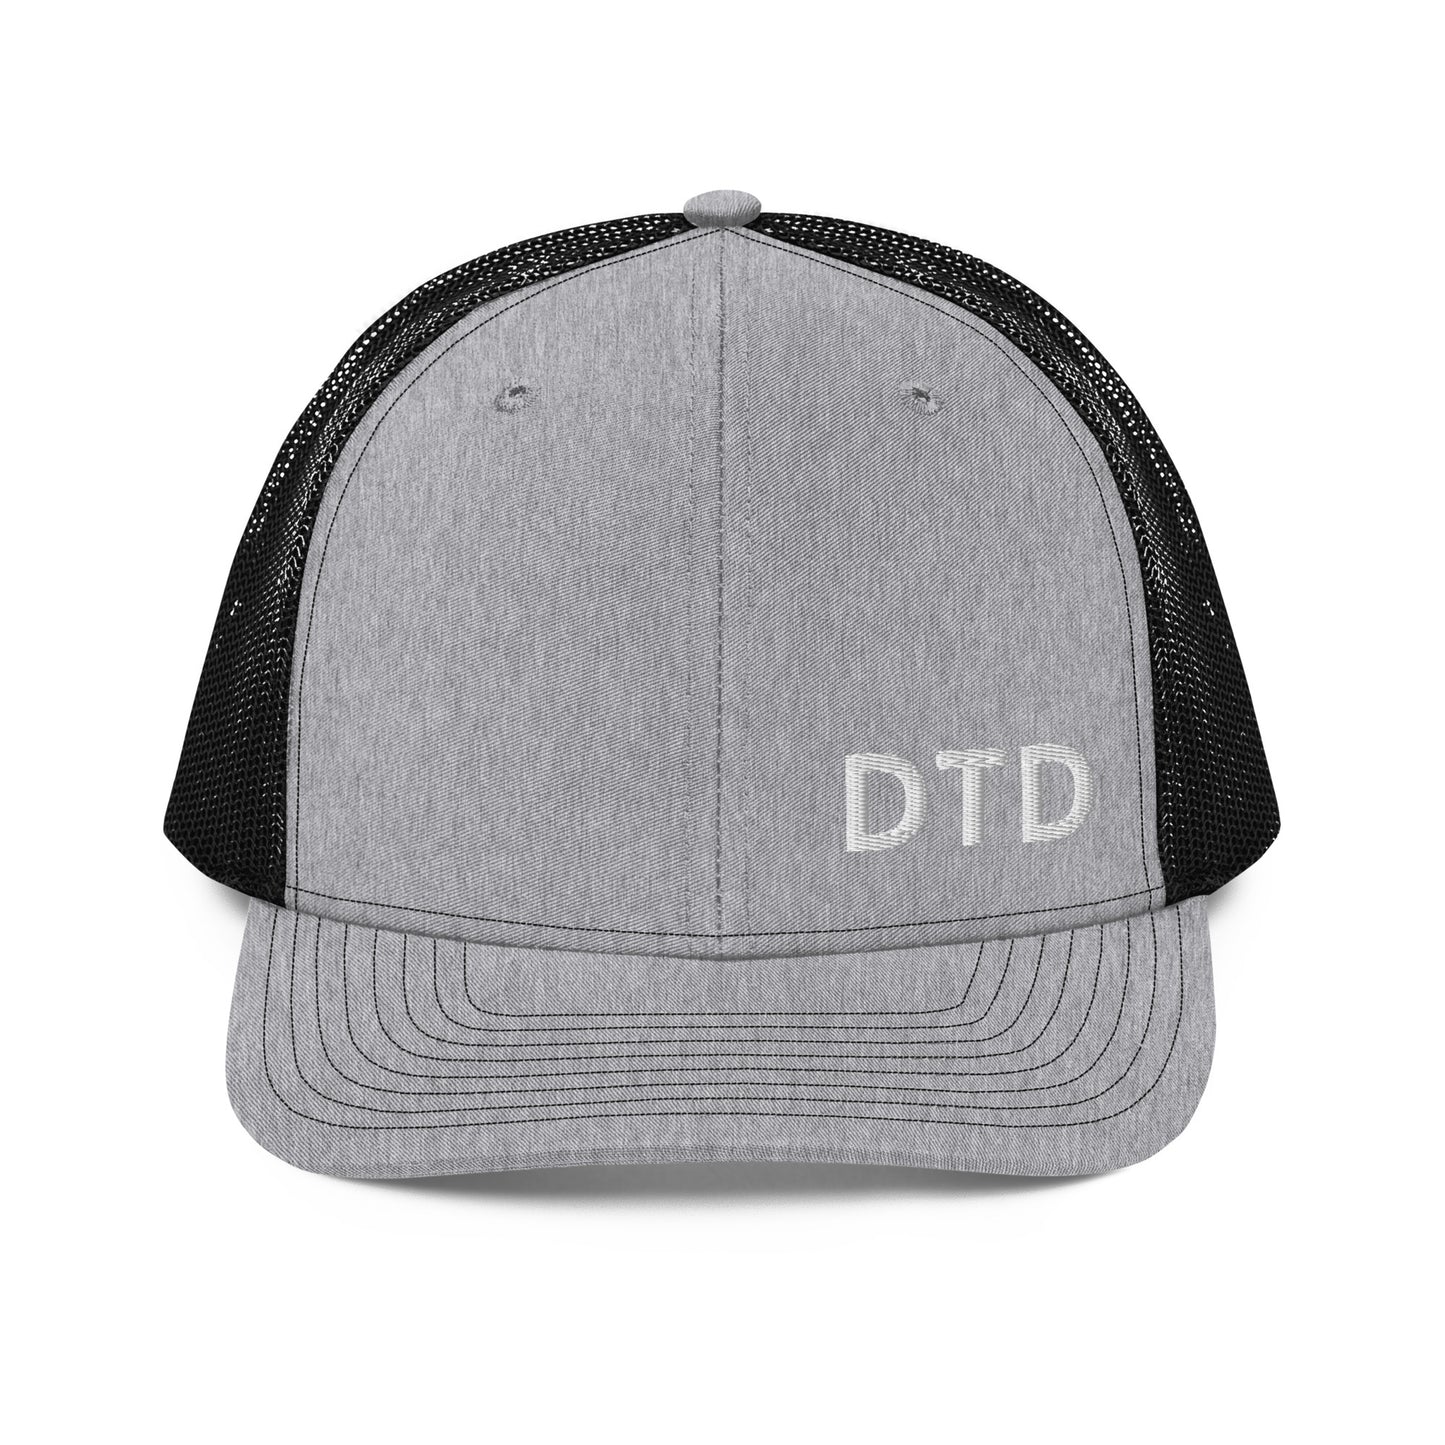 DTD Trucker Cap